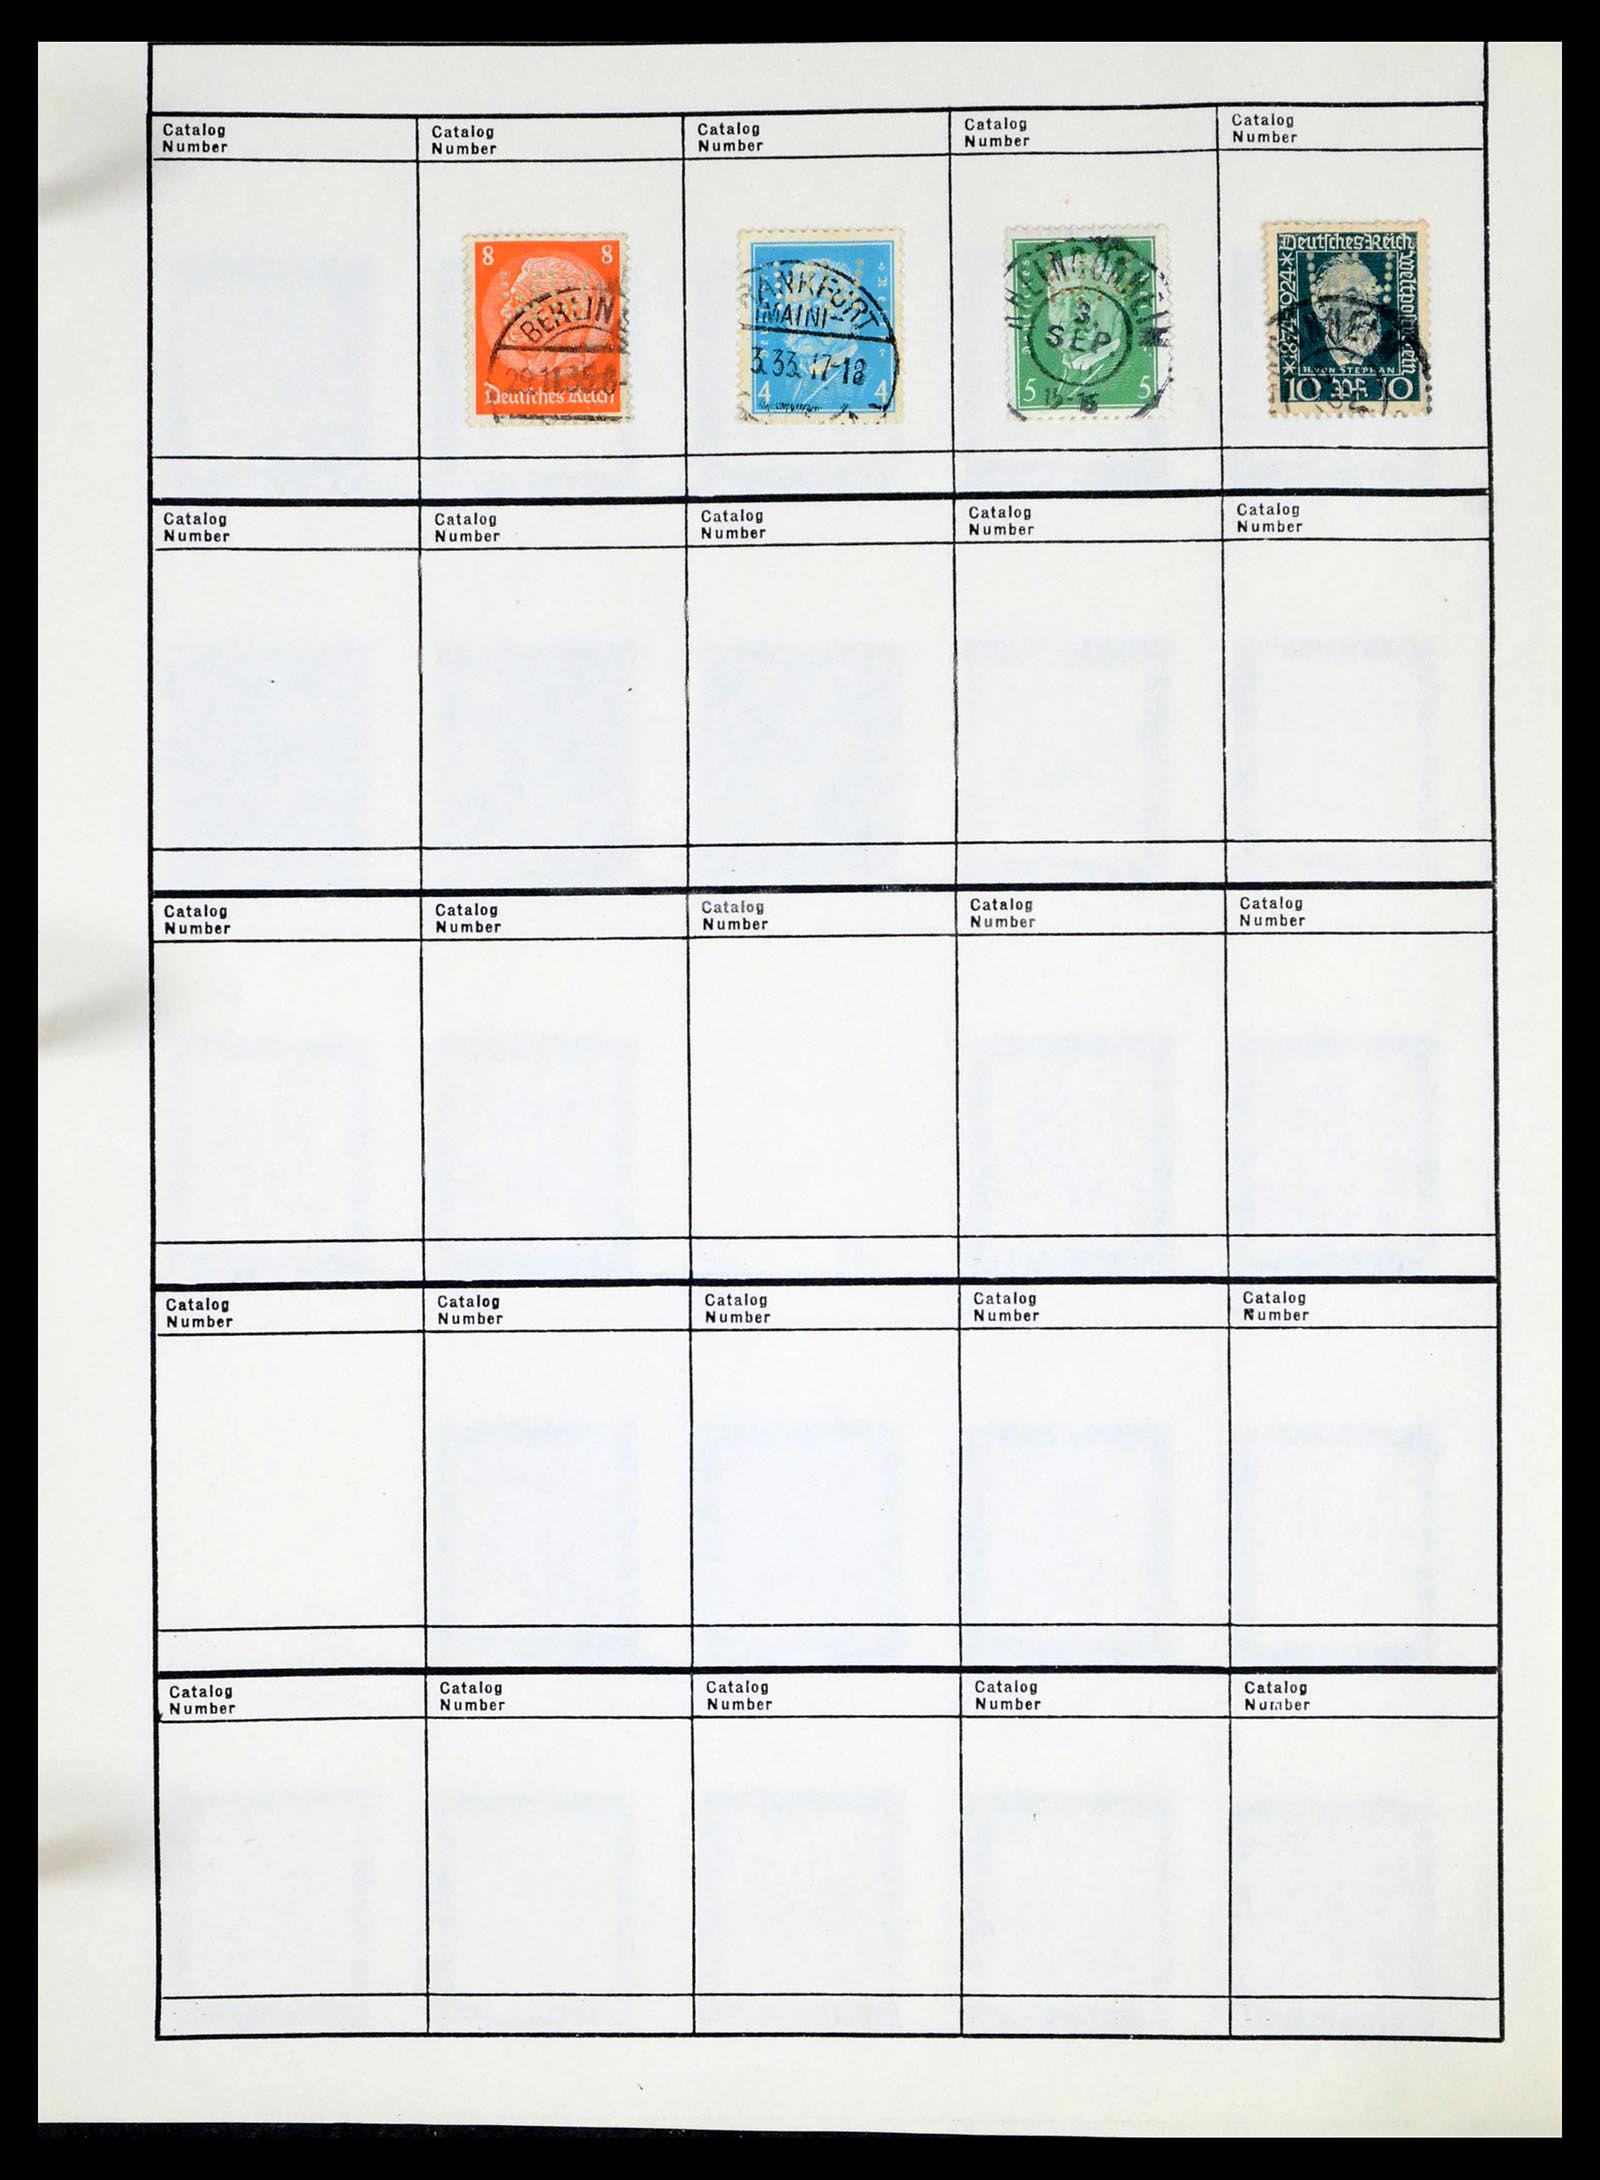 39480 0585 - Stamp collection 39480 German Reich perfins 1880-1955.